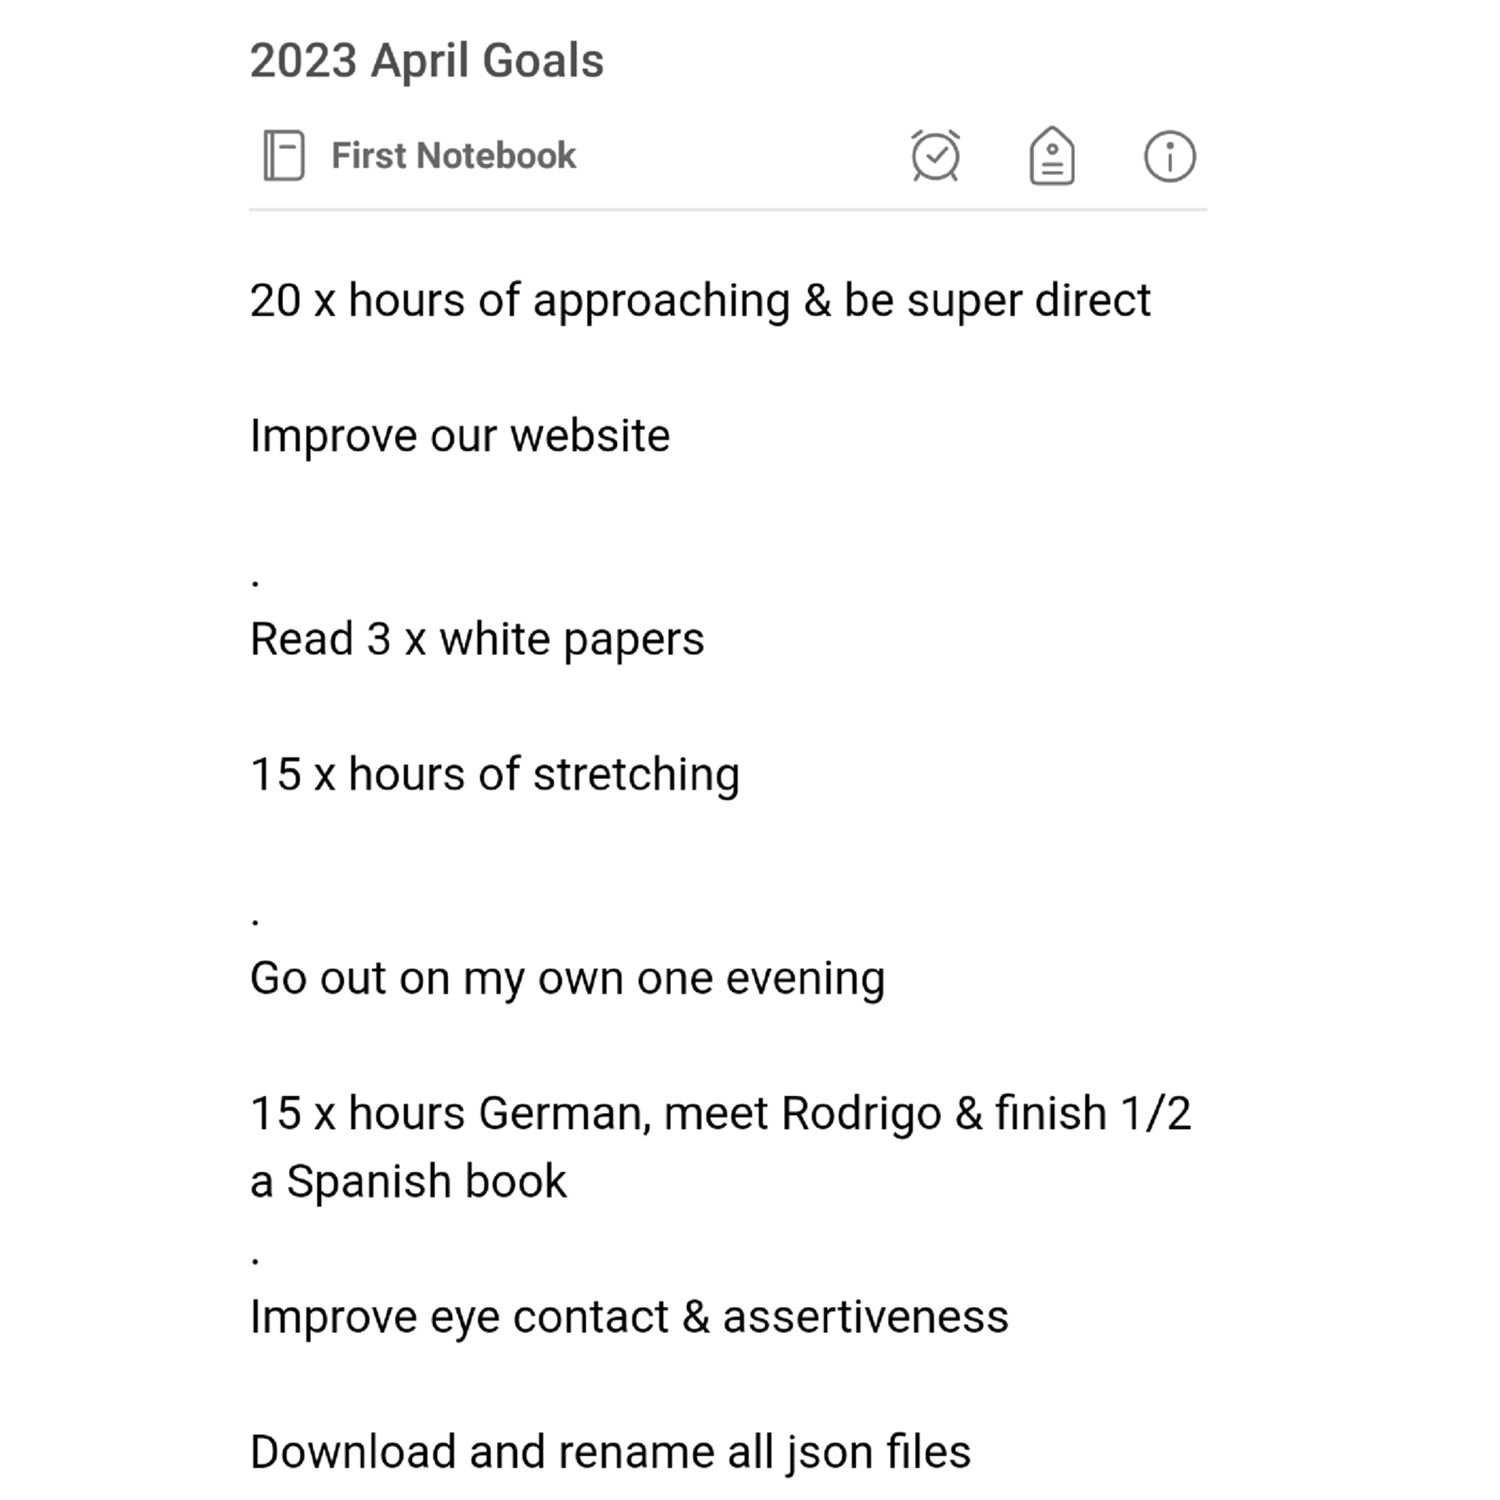 Kyrin's 2023 April Goals